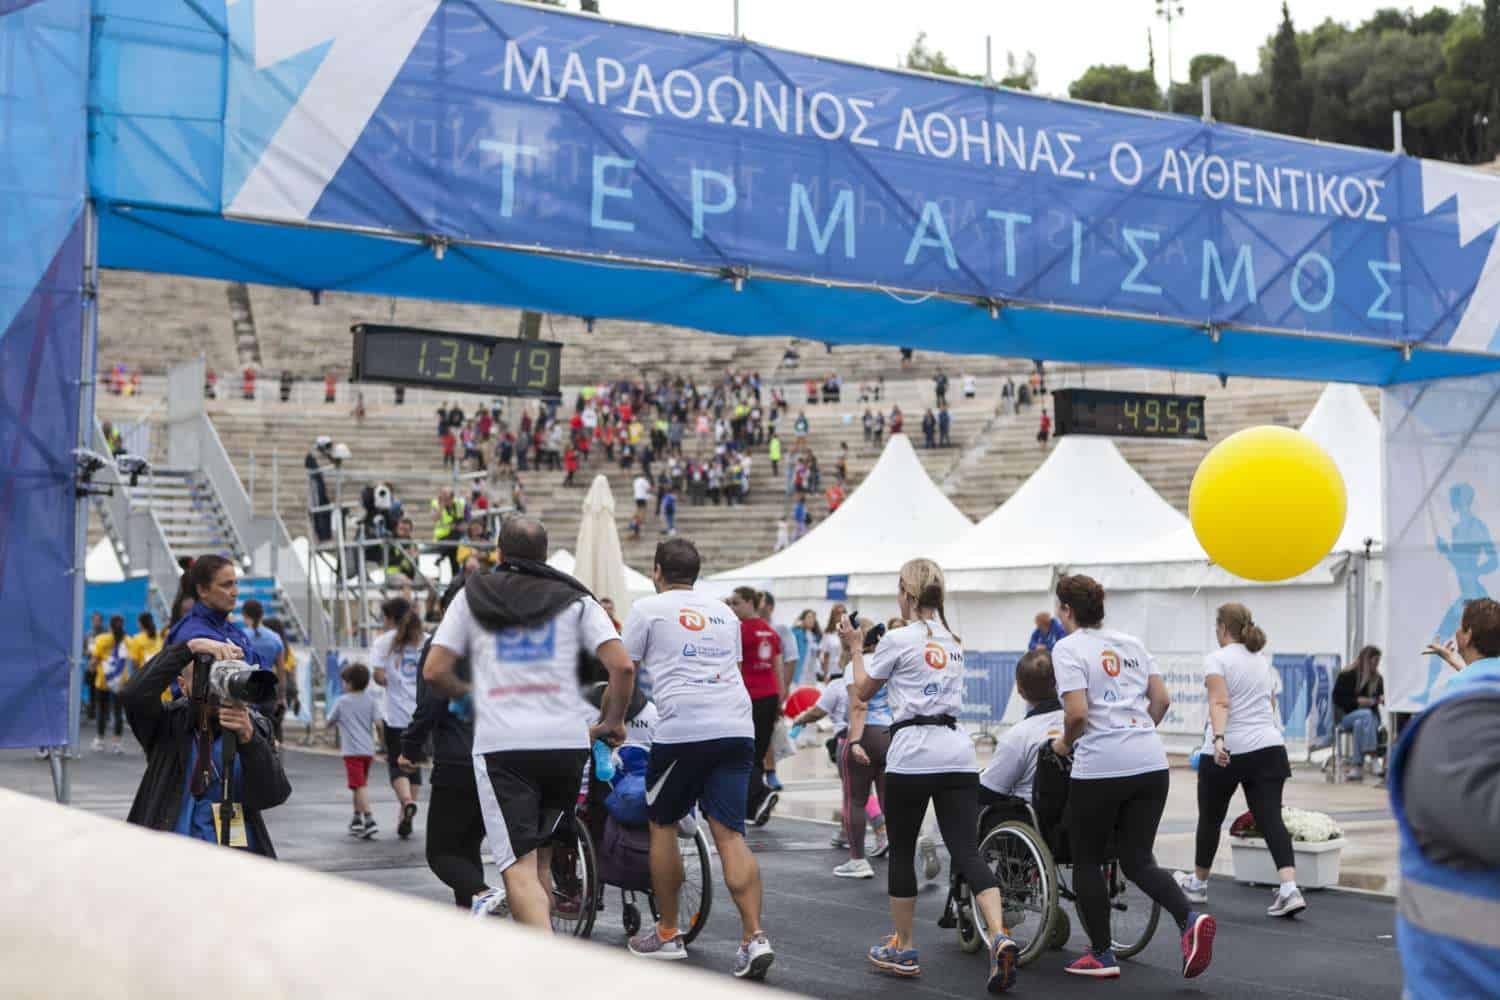 Η ΝΝ Ηellas έτρεξε με τους MDA Runner στον Μαραθώνιο Αθήνας, τον Αυθεντικό